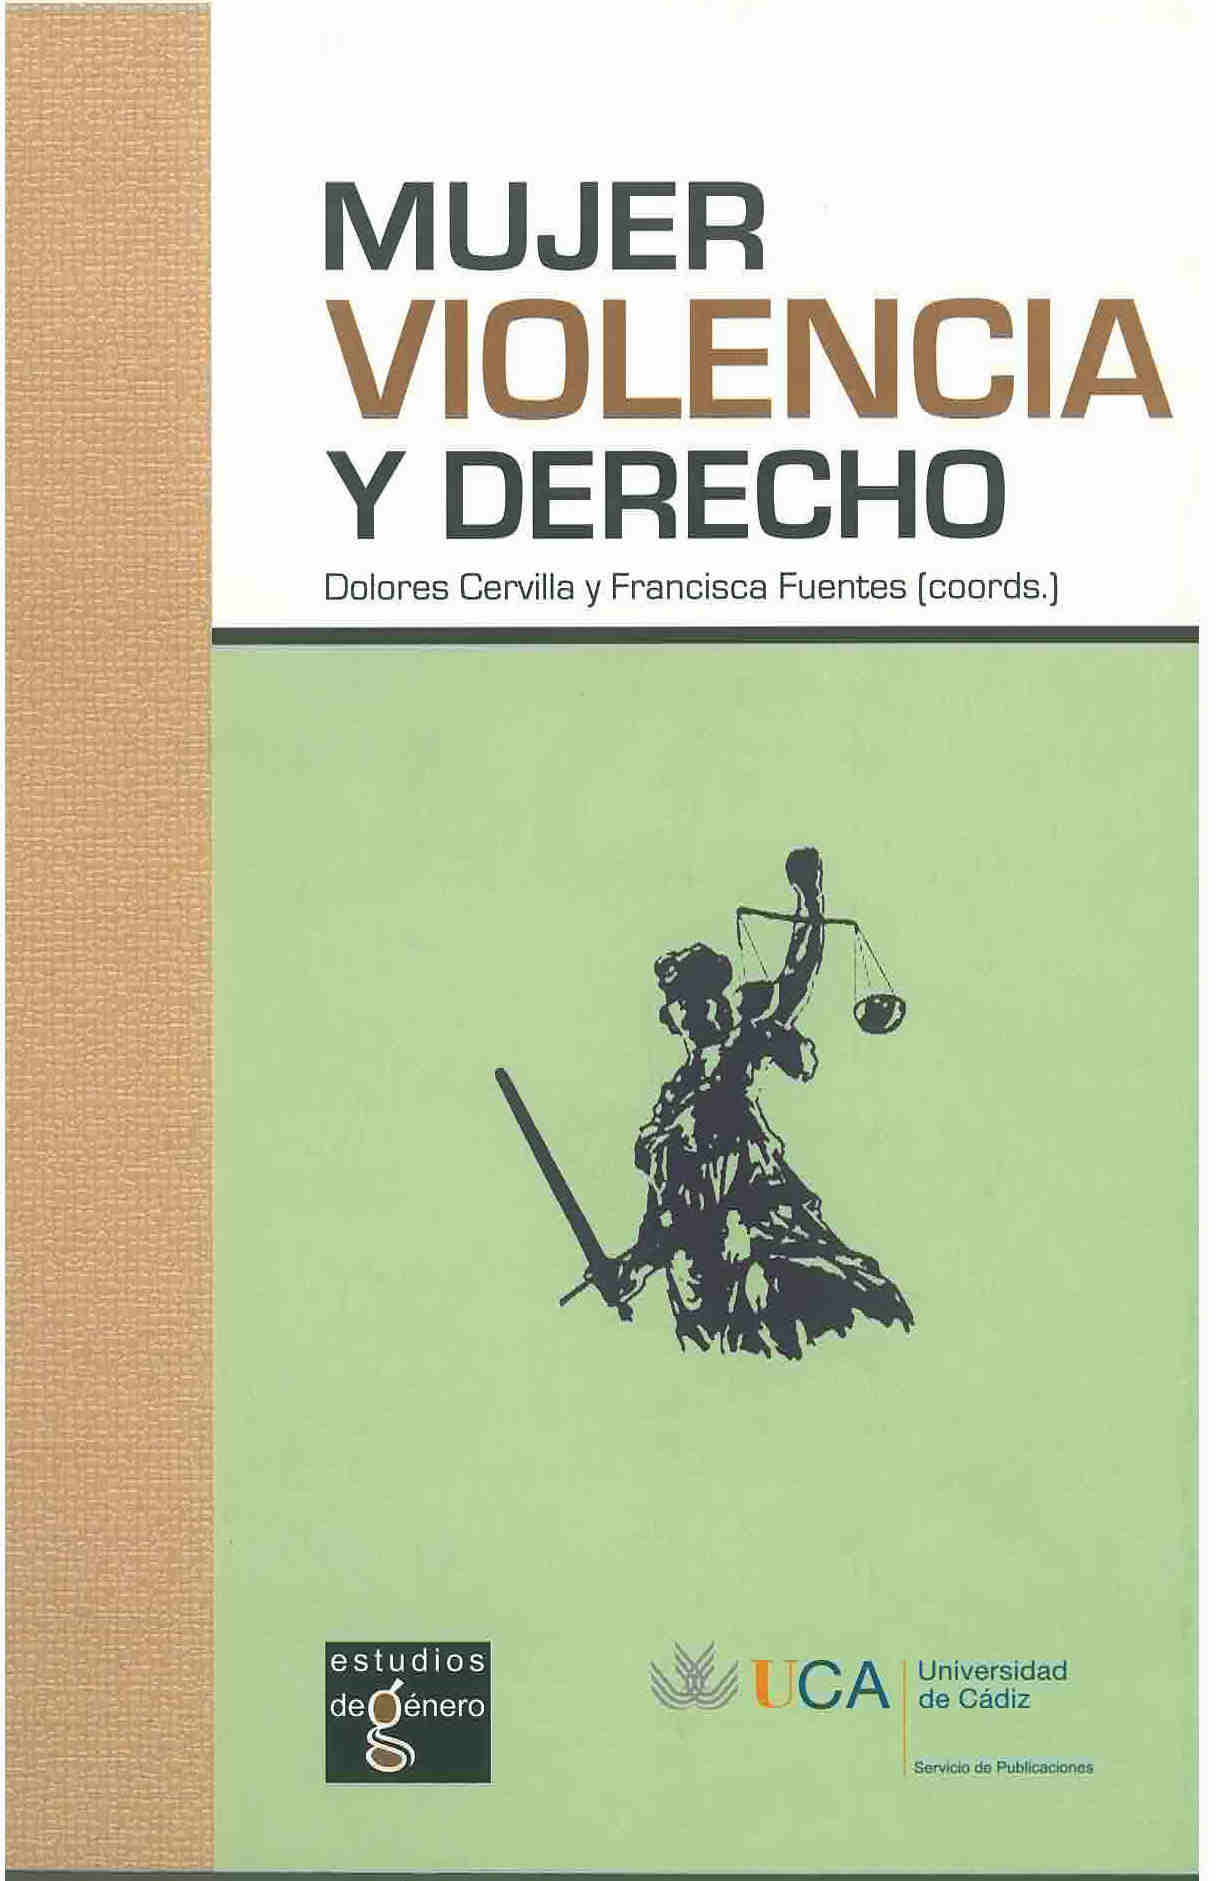 Mujer violencia y derecho